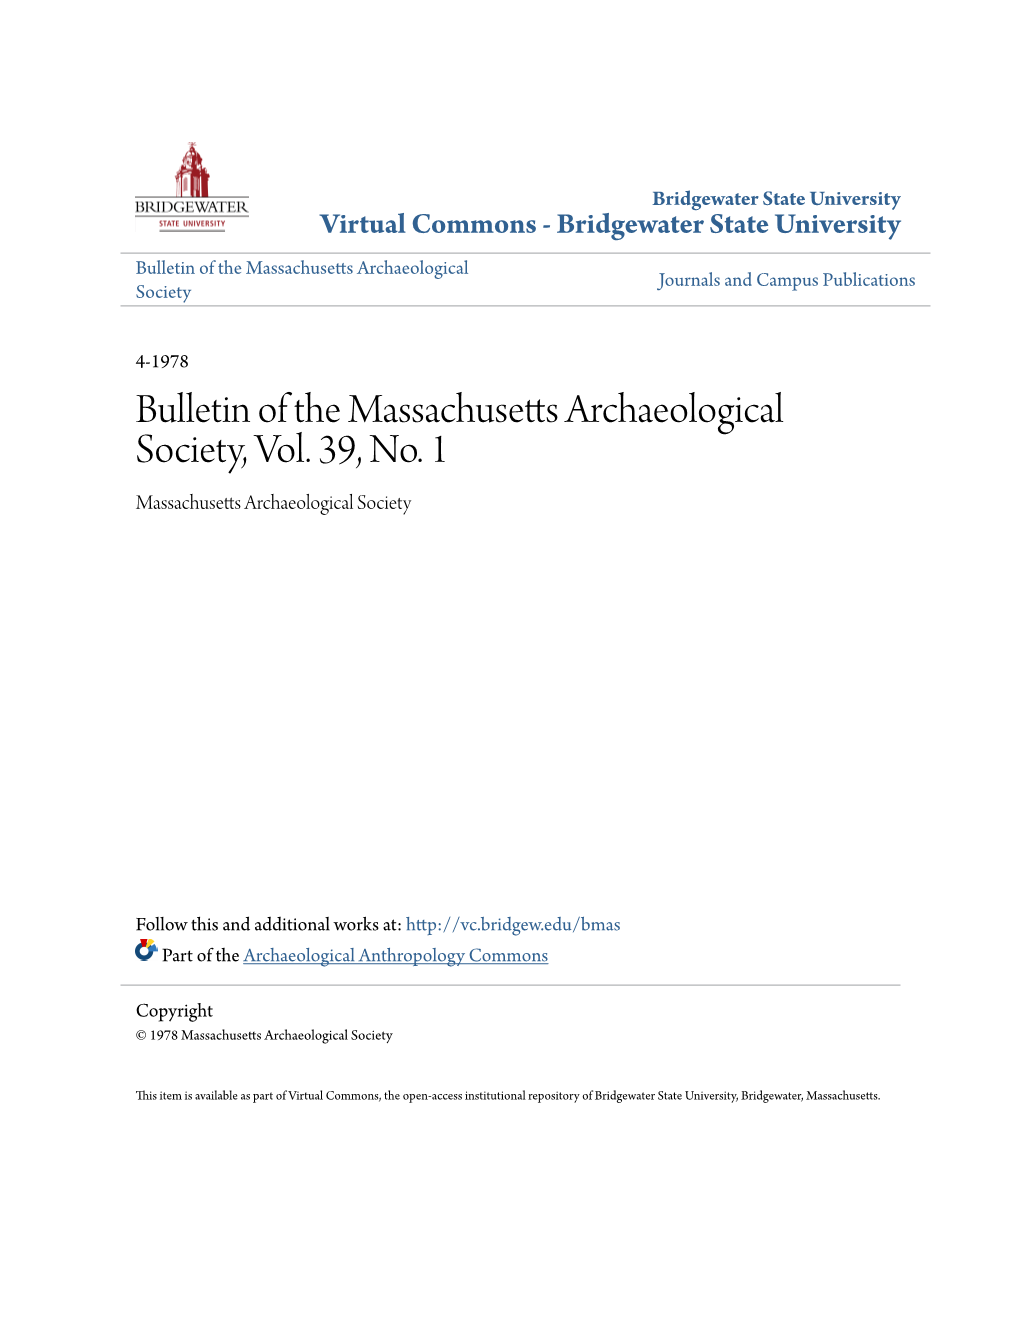 Bulletin of the Massachusetts Archaeological Society, Vol. 39, No. 1 Massachusetts Archaeological Society